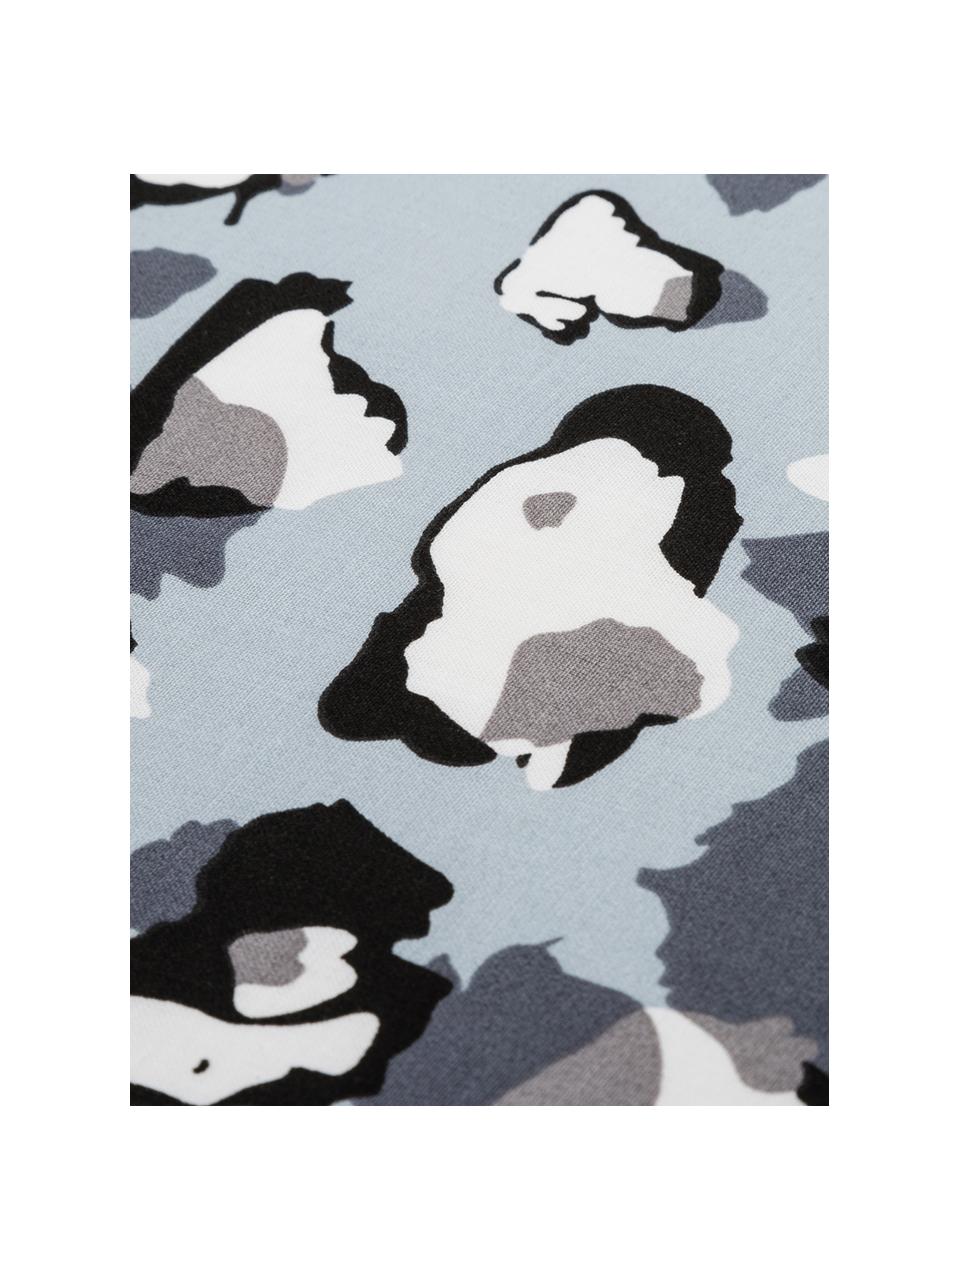 Dekbedovertrek Famke Blue, Katoen, Lichtblauw, wit, grijs, zwart, 240 x 220 cm + 2 kussenhoezen 60 x 70 cm